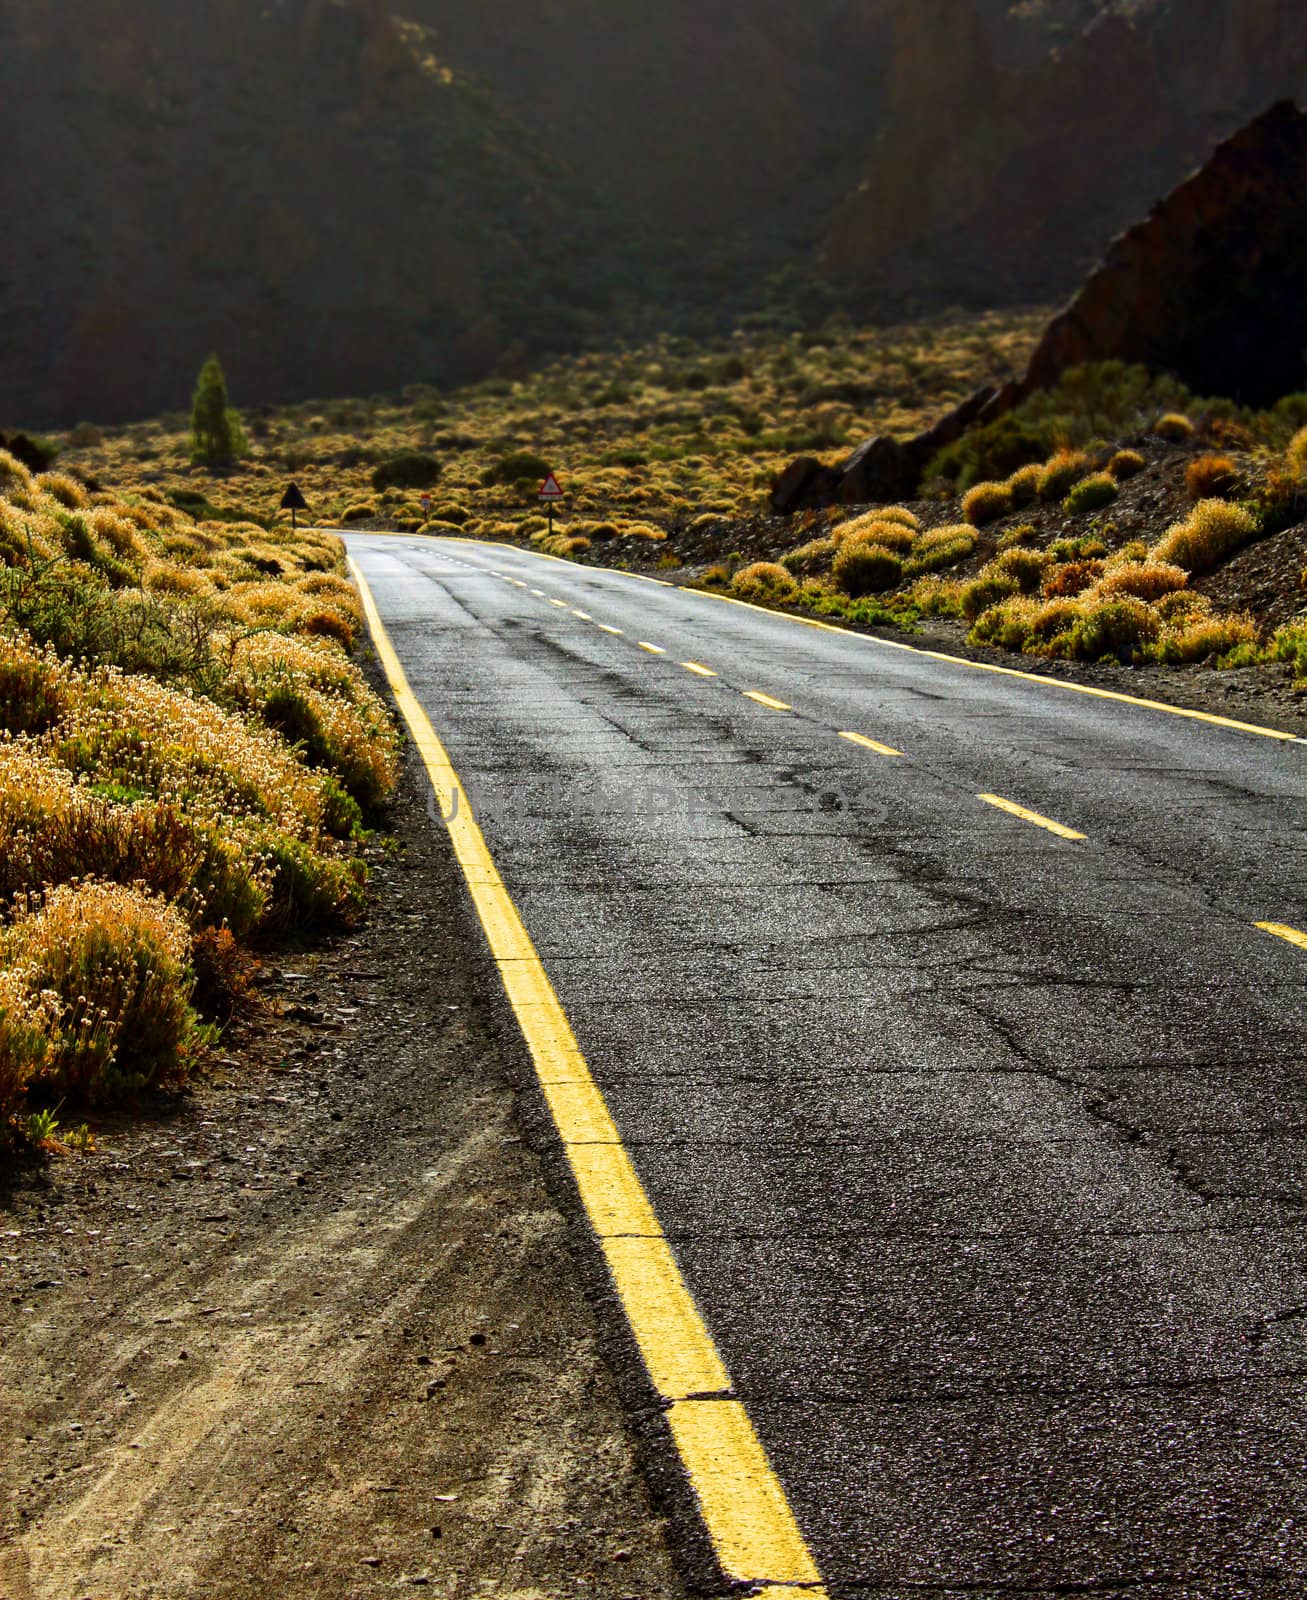 Empty asphalt road in desert perspective